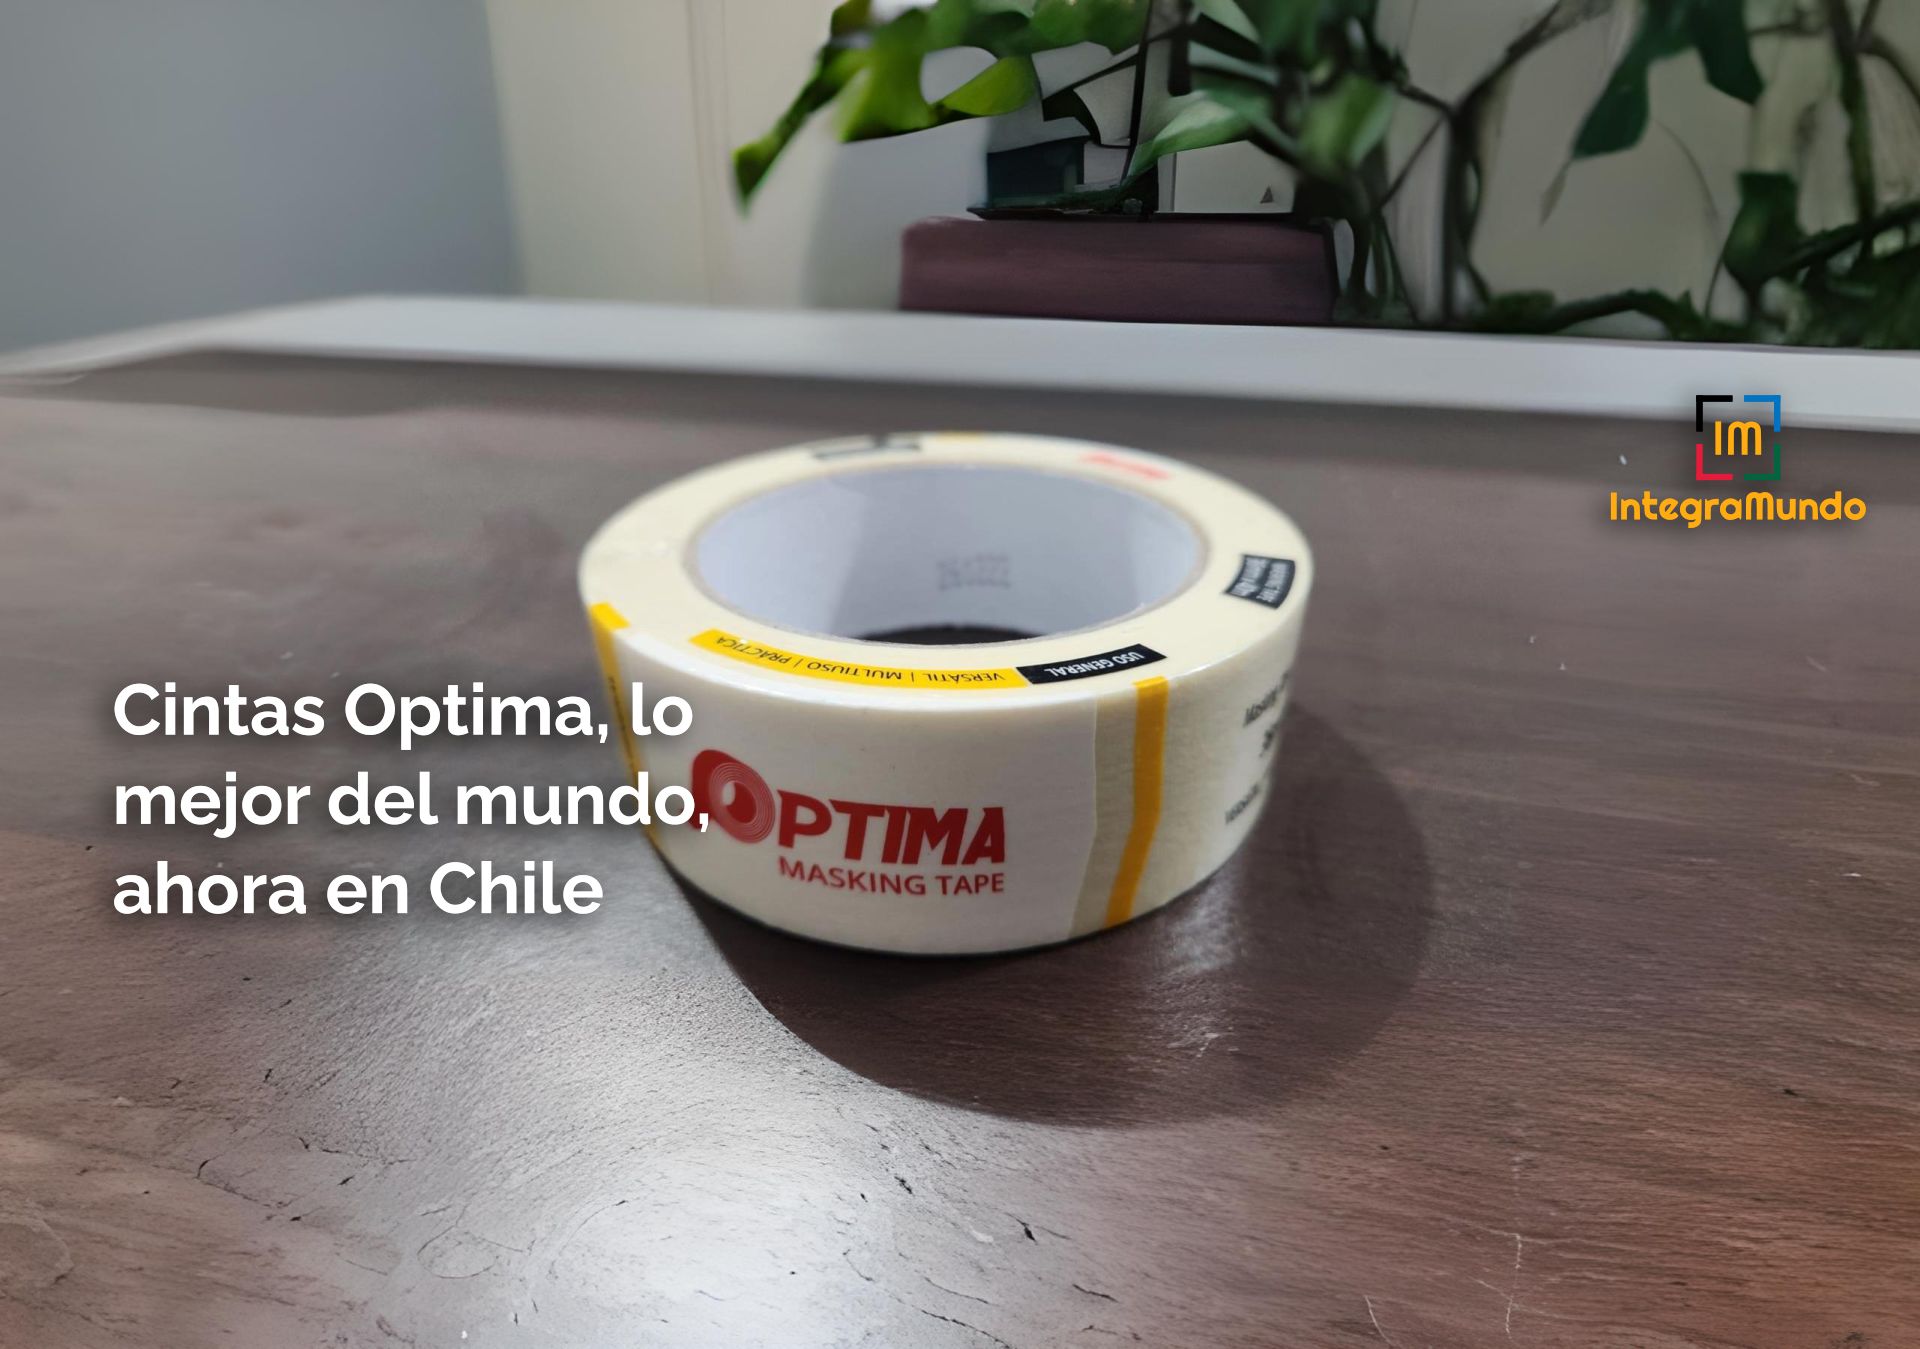 Cintas Optima, lo mejor del mundo, ahora en Chile.